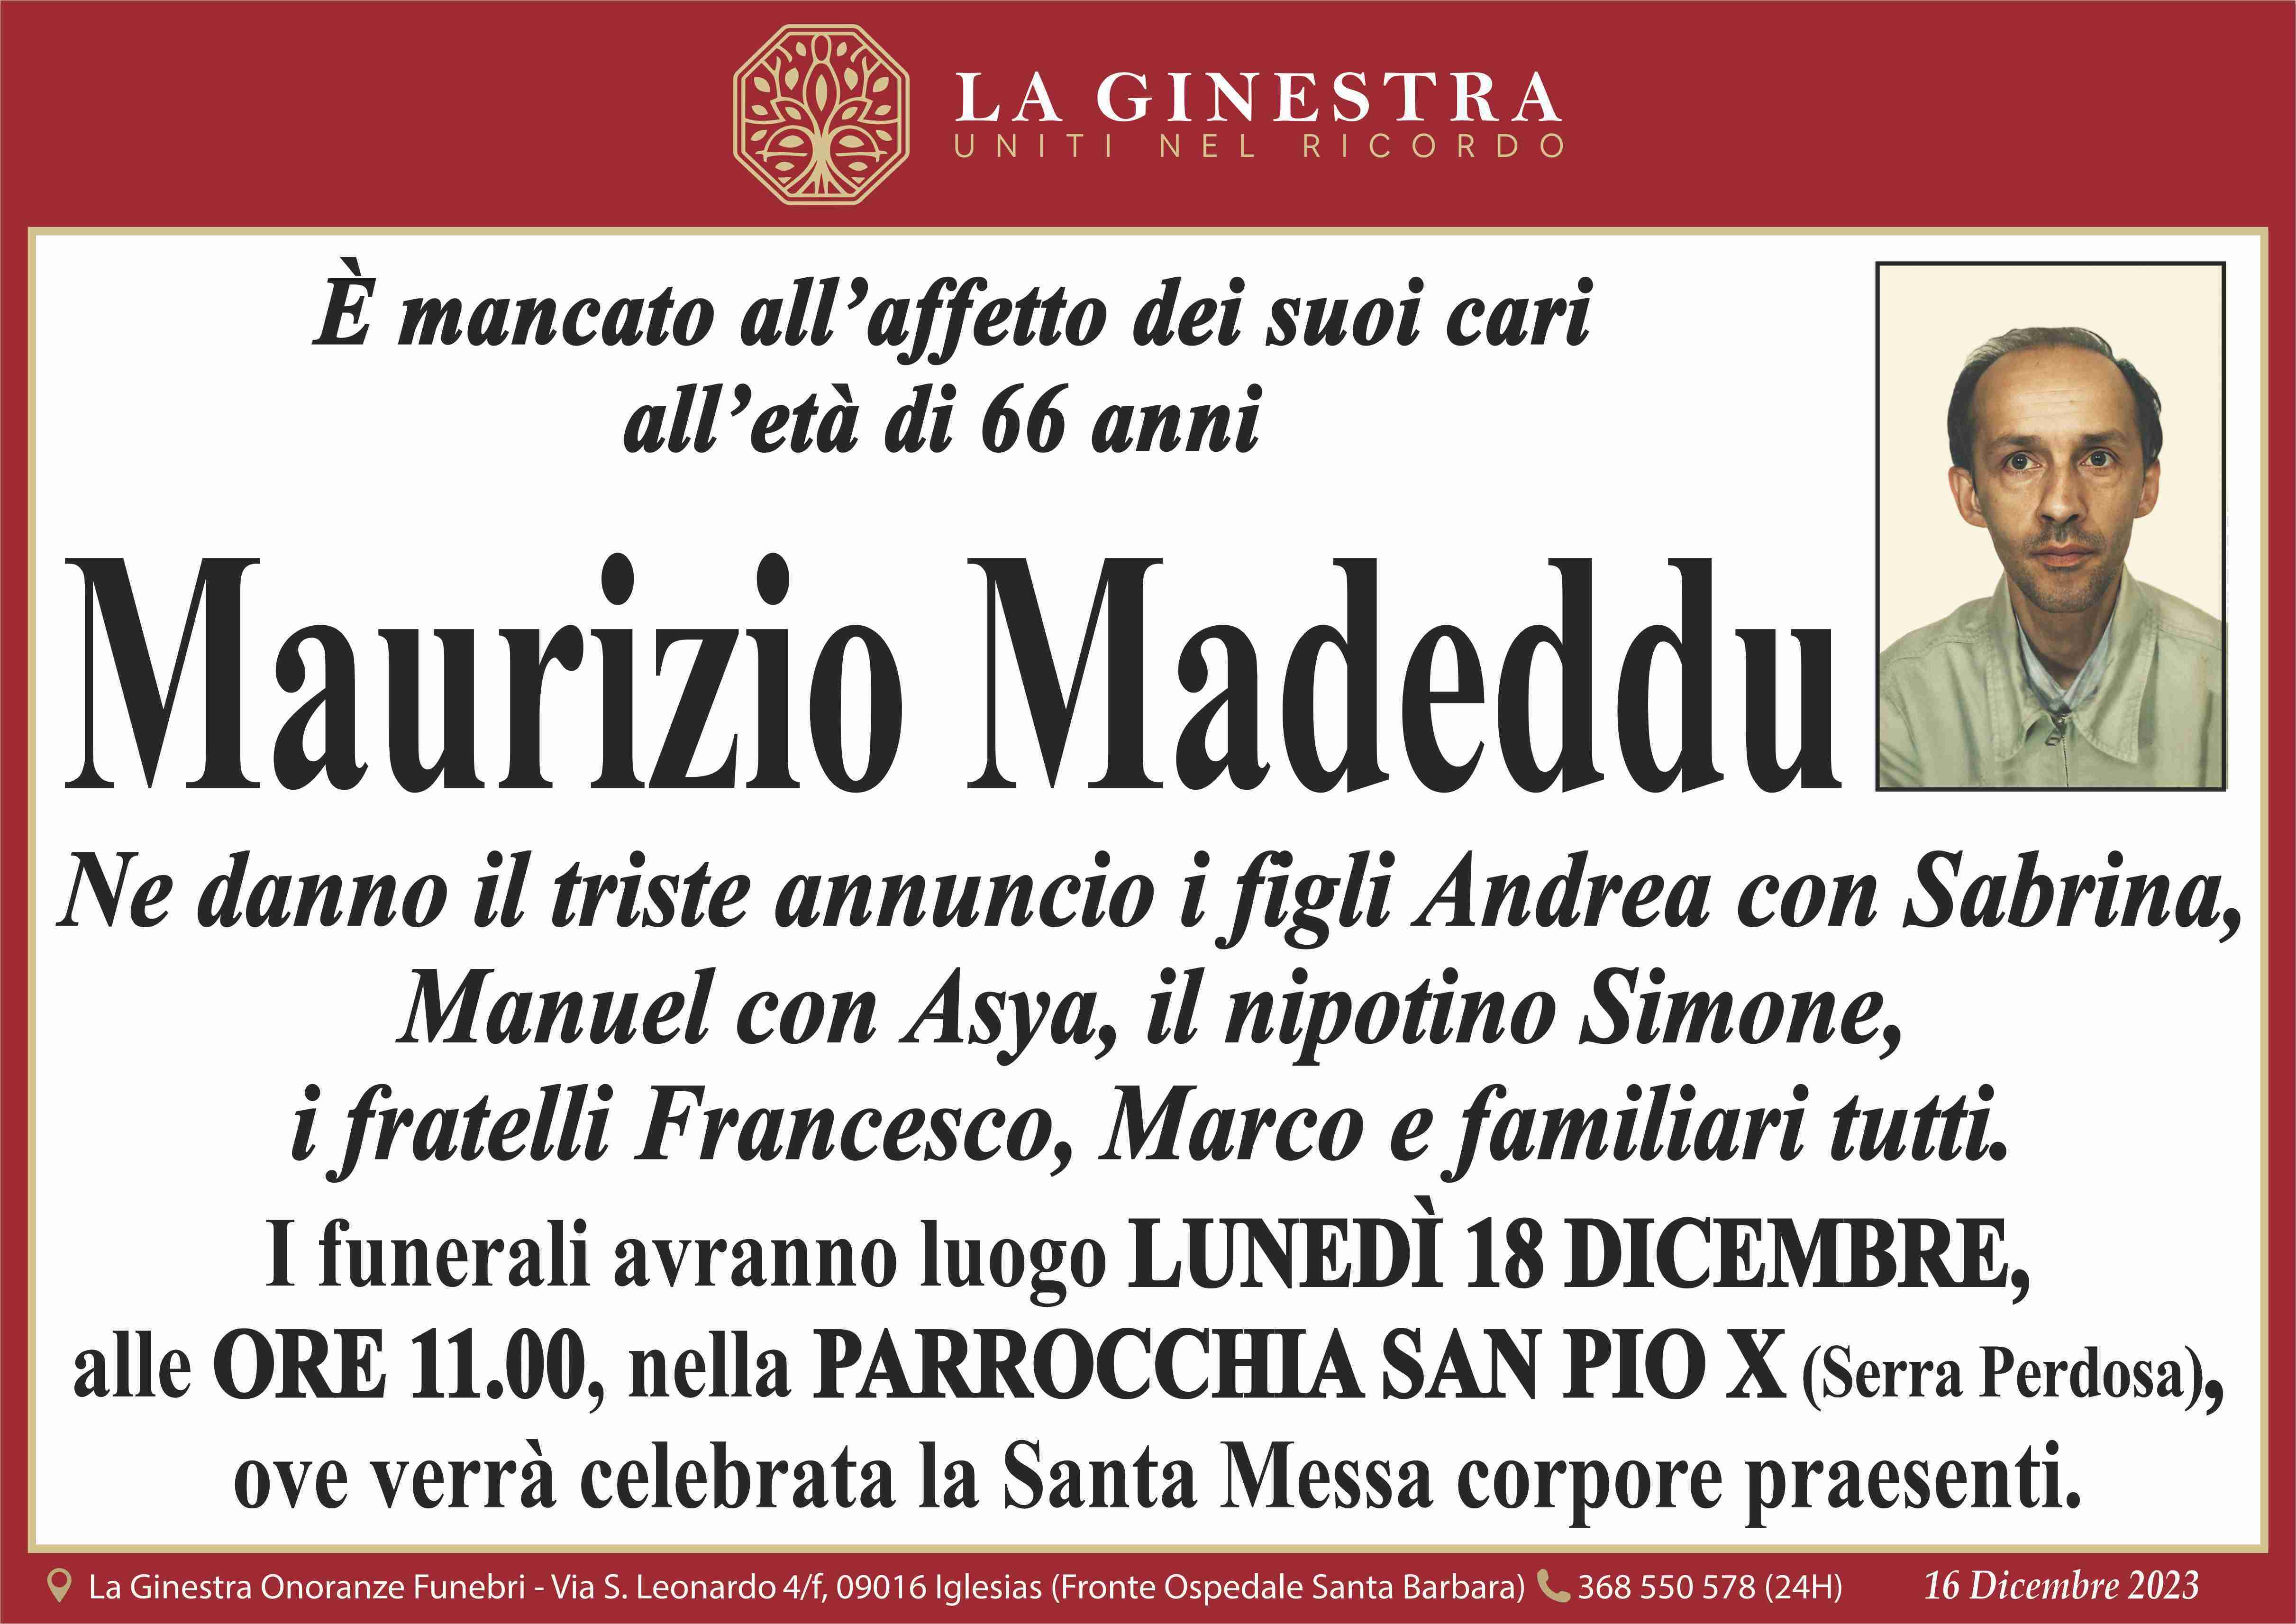 Maurizio Madeddu